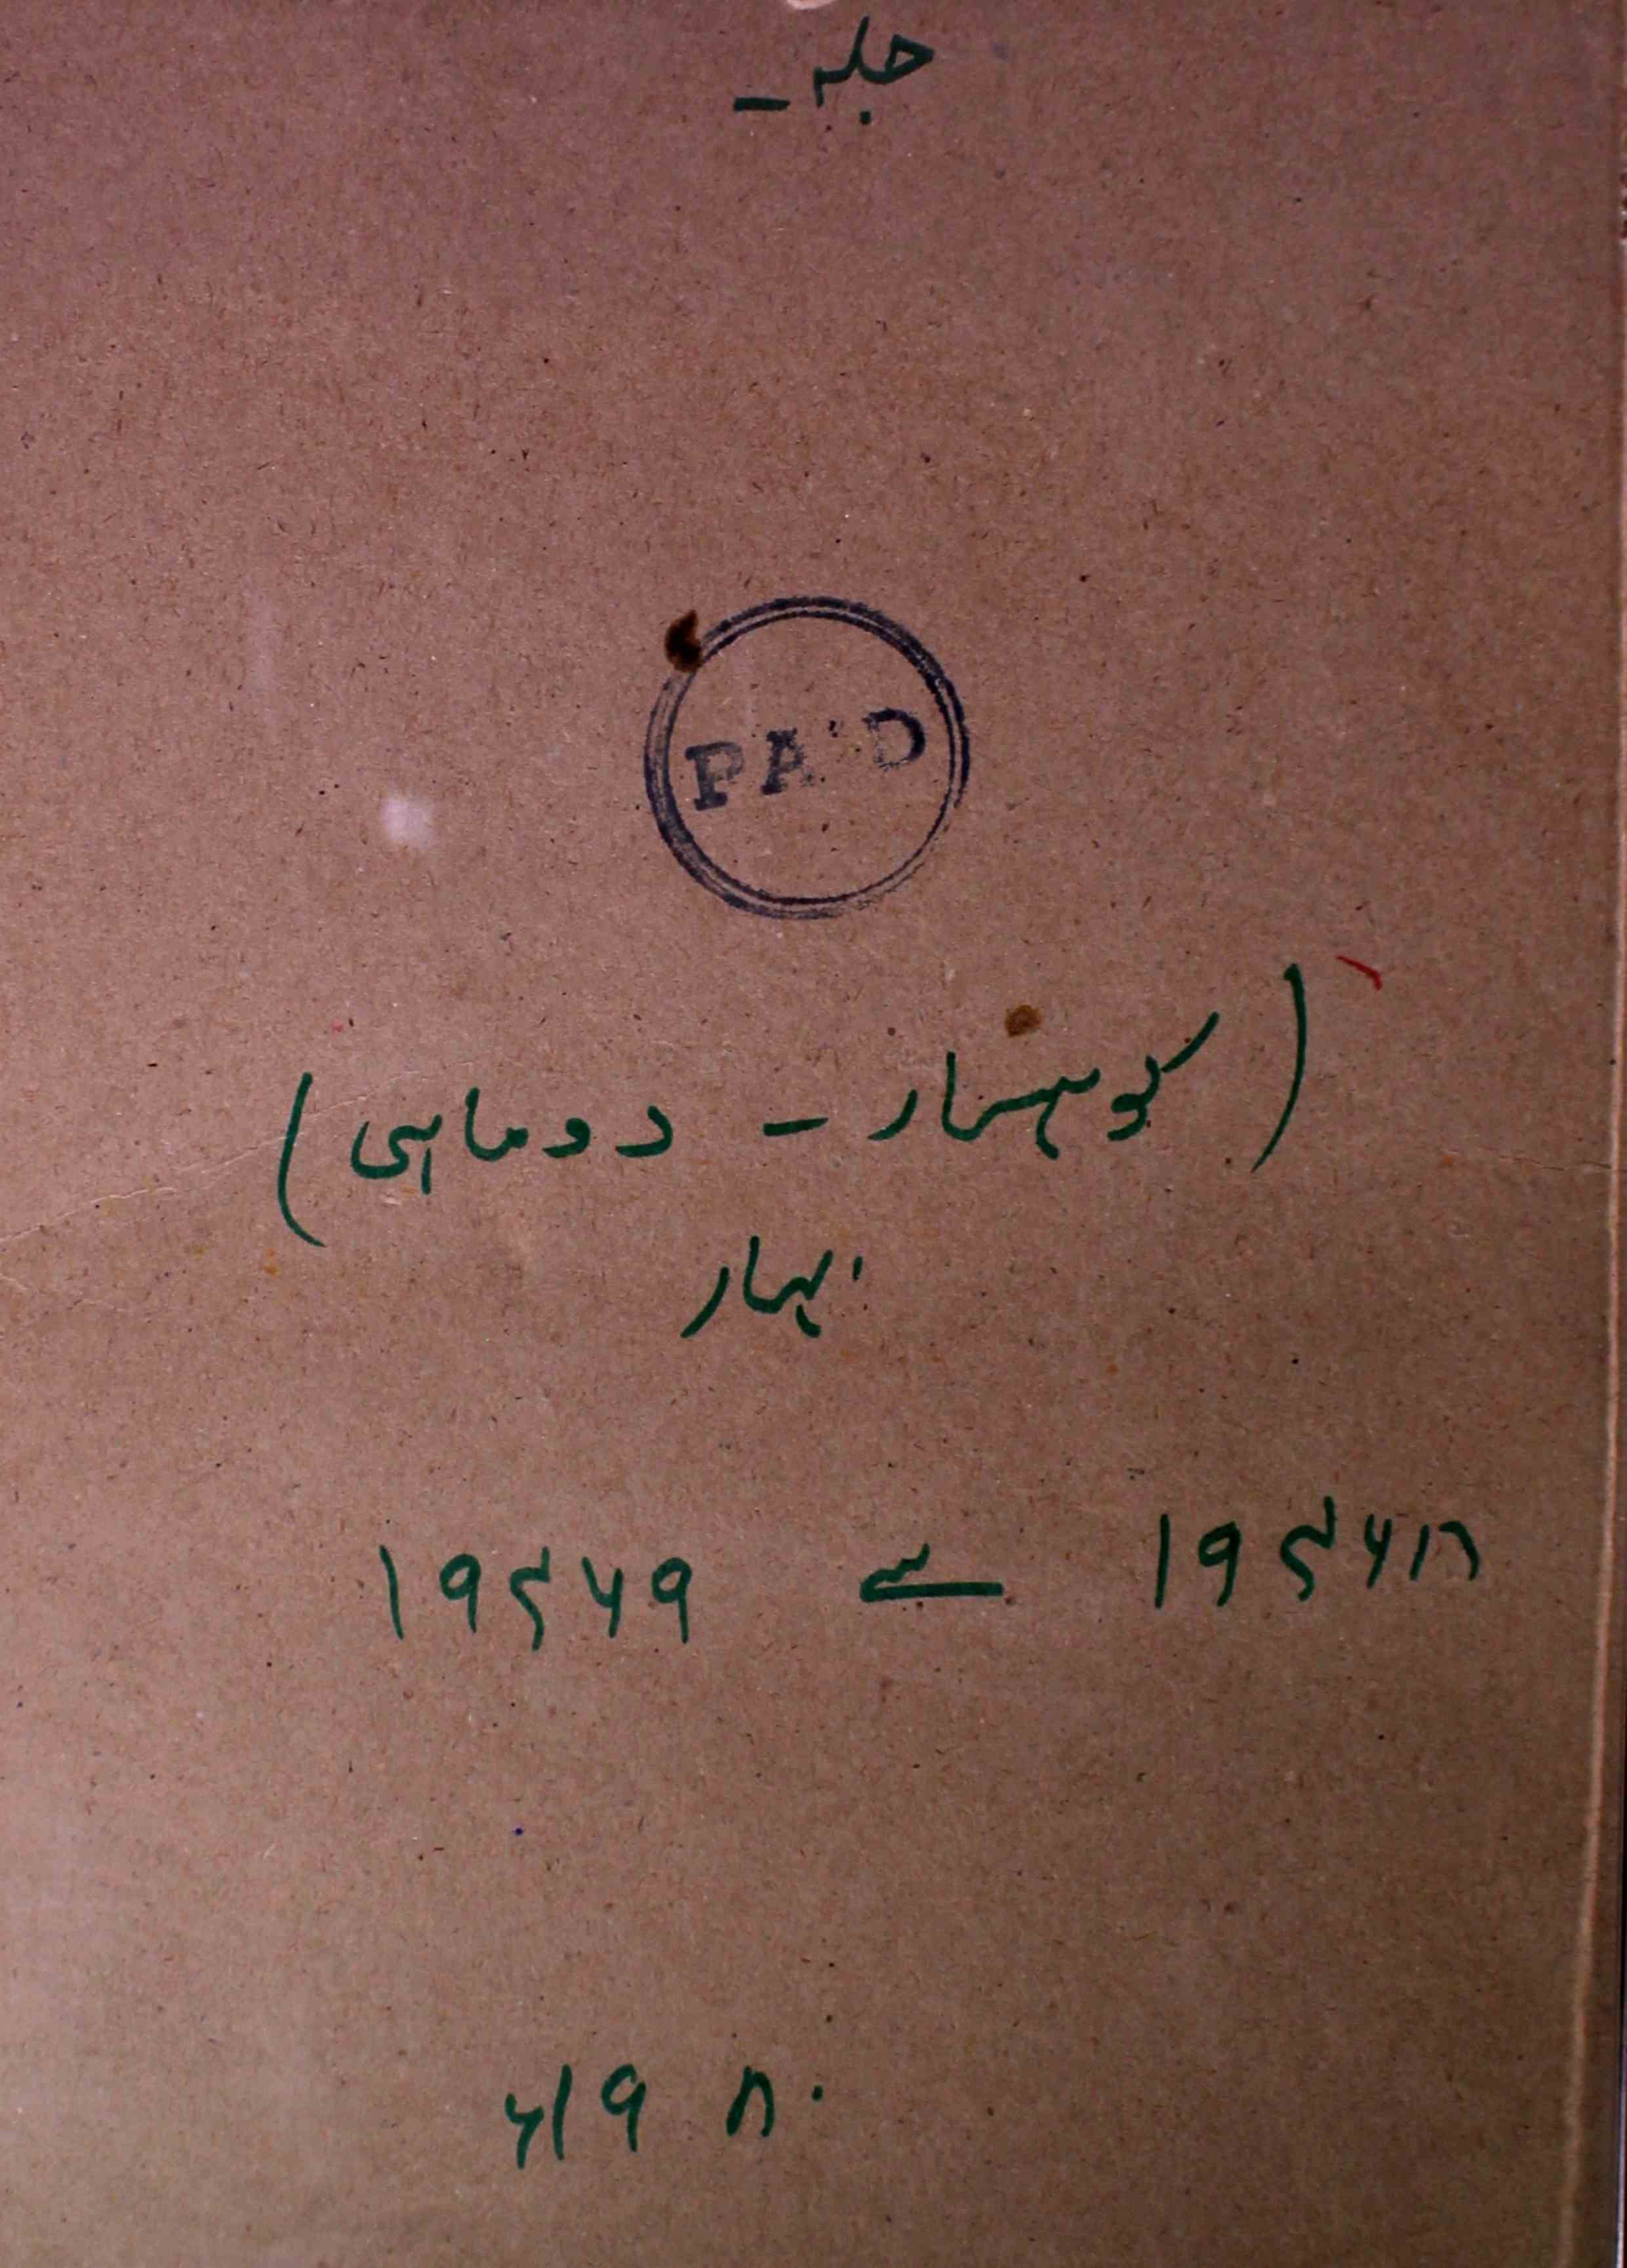 Kohsaar Shumara 5,6 March,April 1980-SVK-Shumara Number-005,006